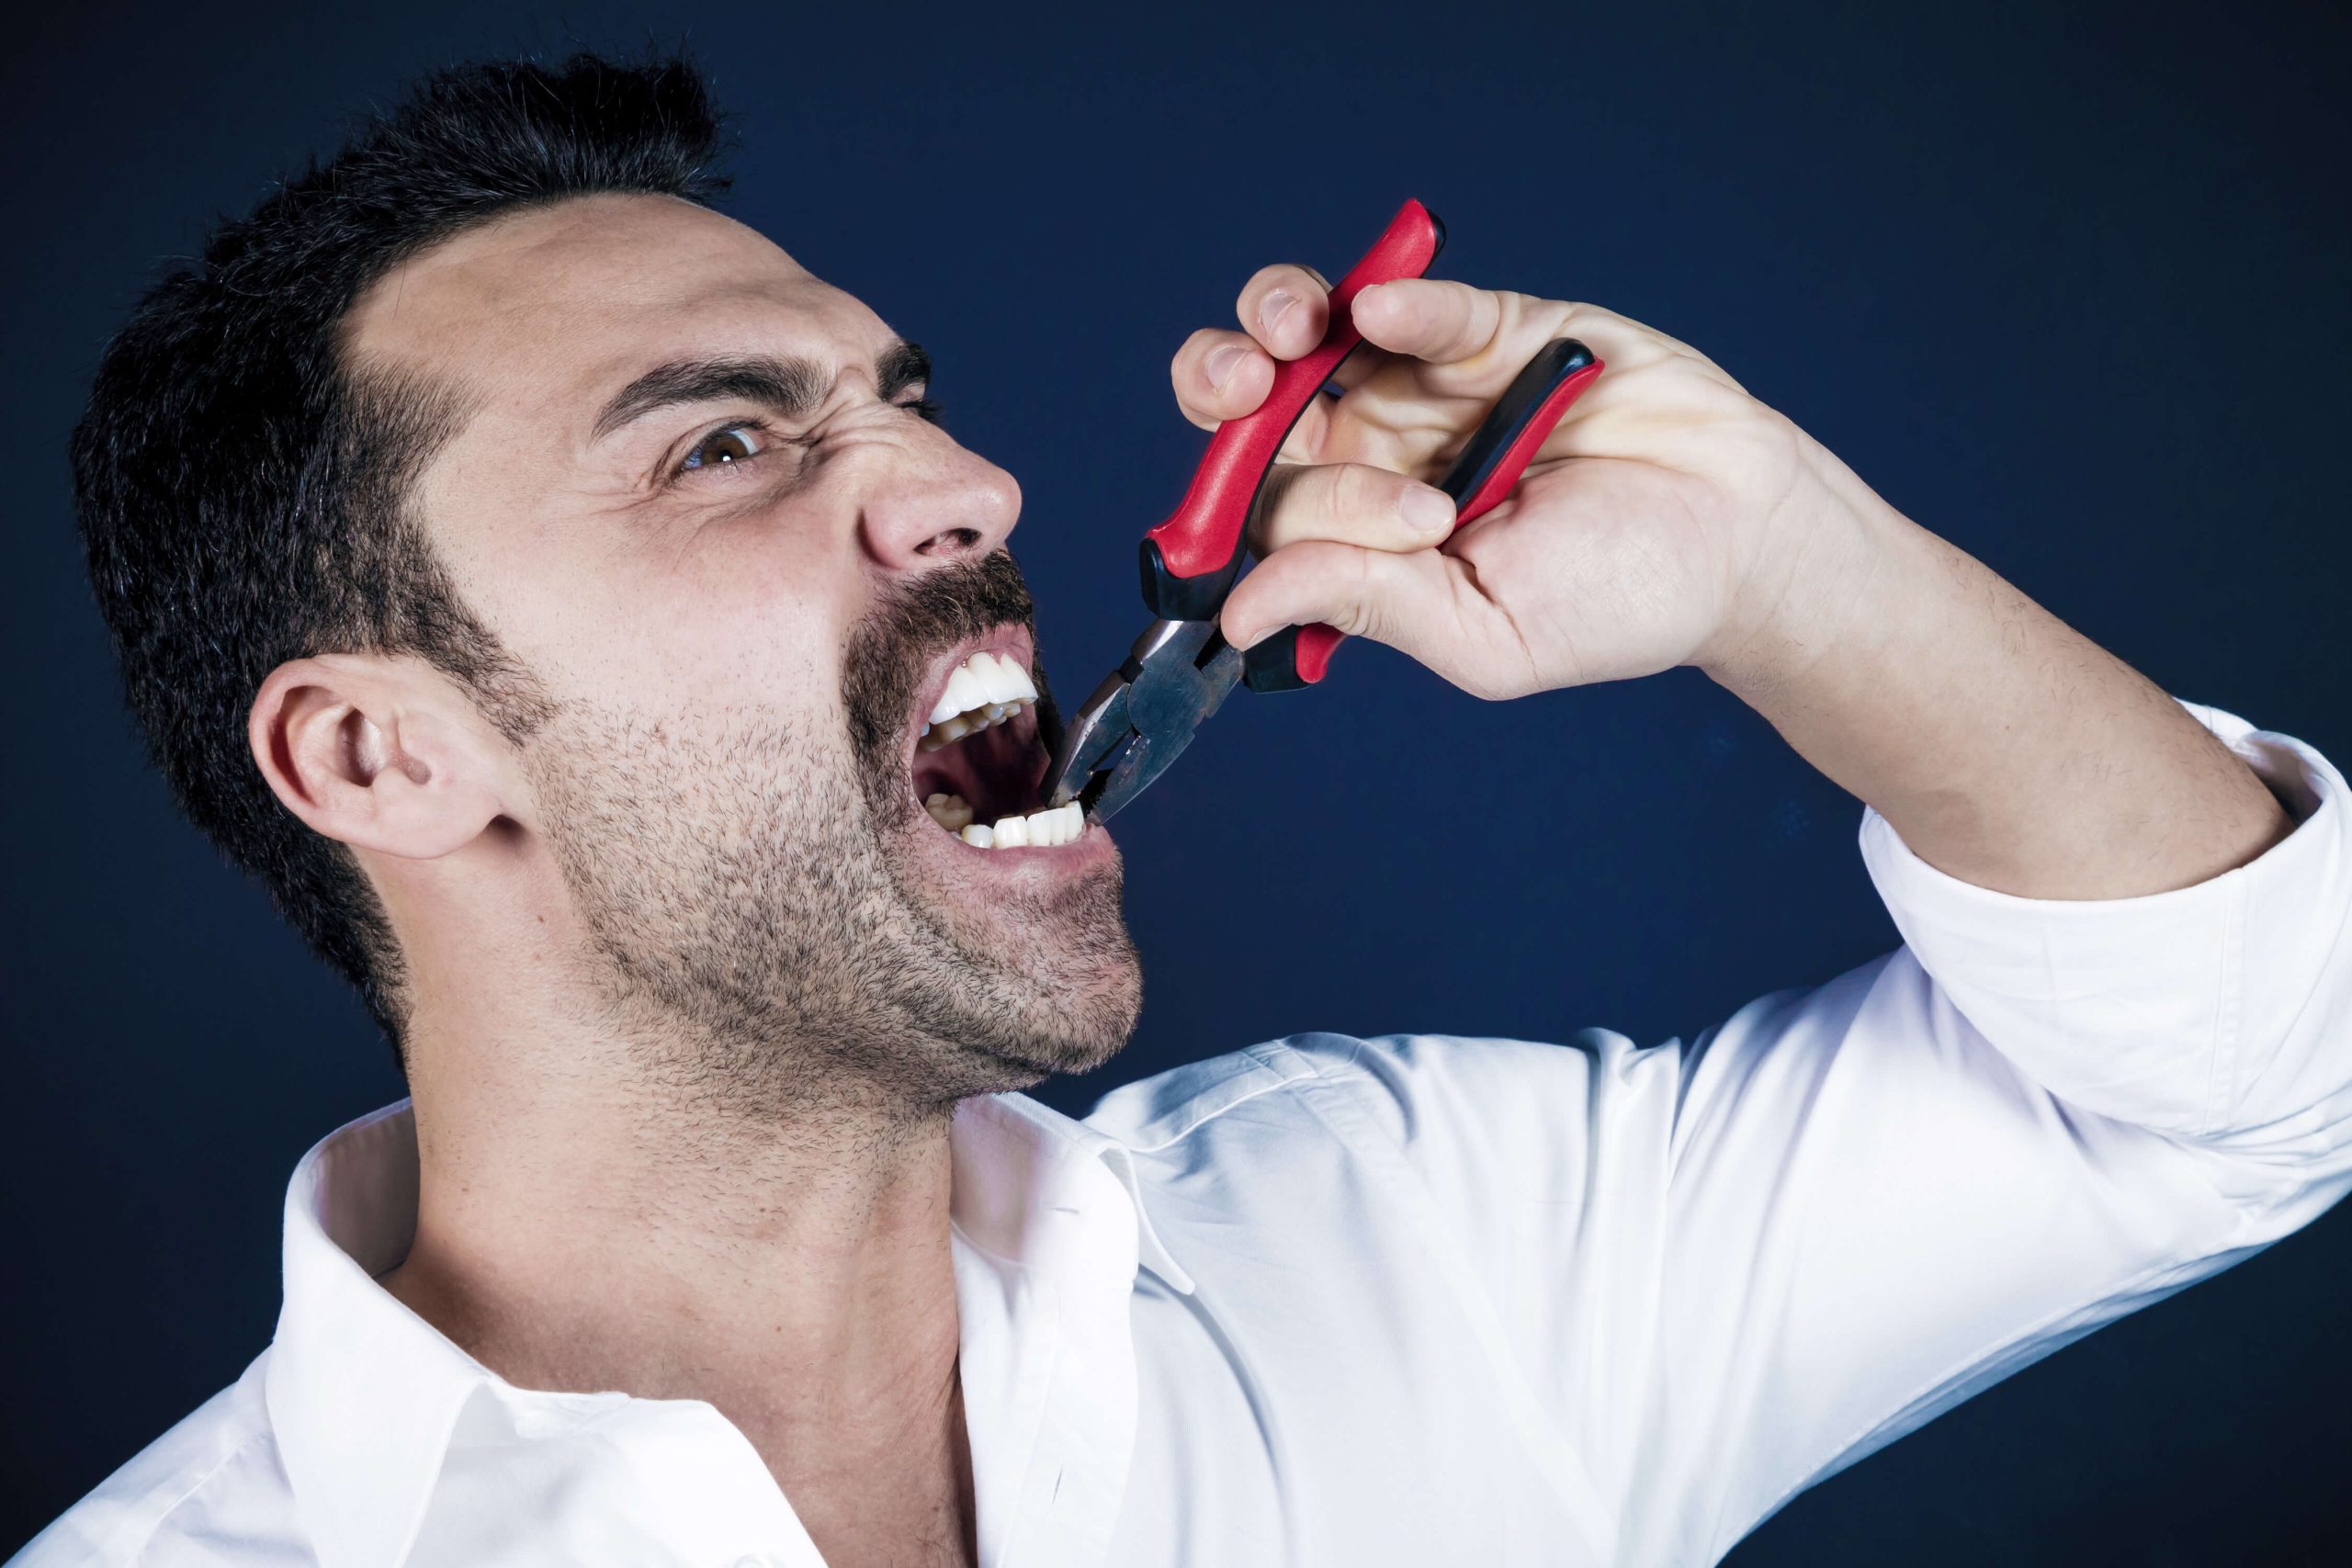 homem arrancando dente com um alicate